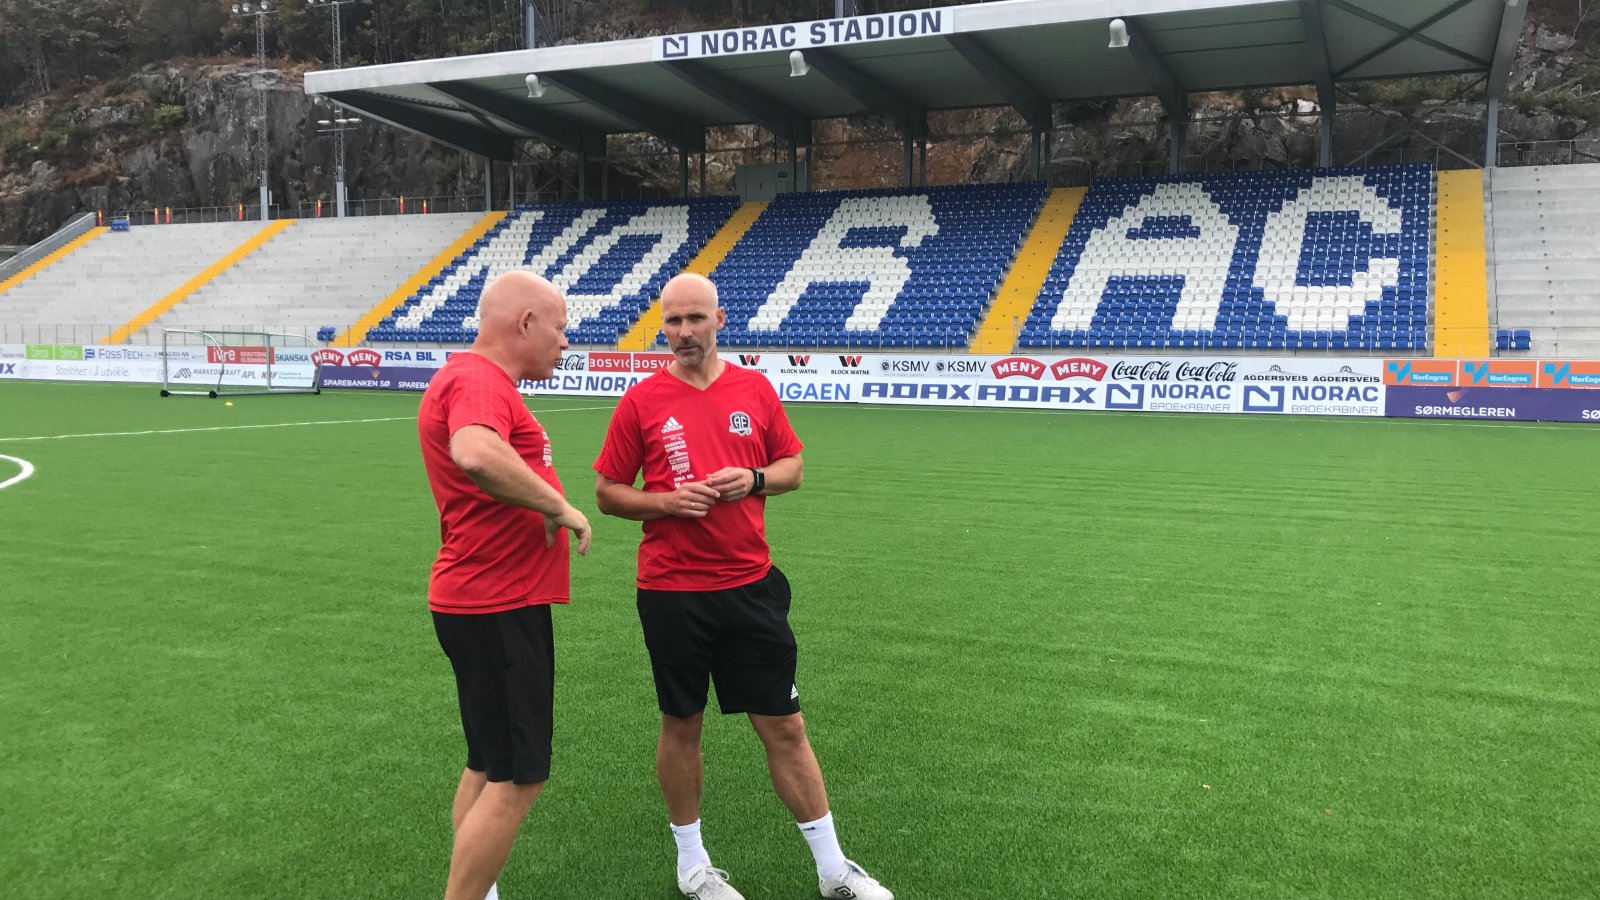 Frank Bredal og Steinar Pedersen utveksler erfaringer og synspunkter etter første treningsøkt sammen på Norac stadion.